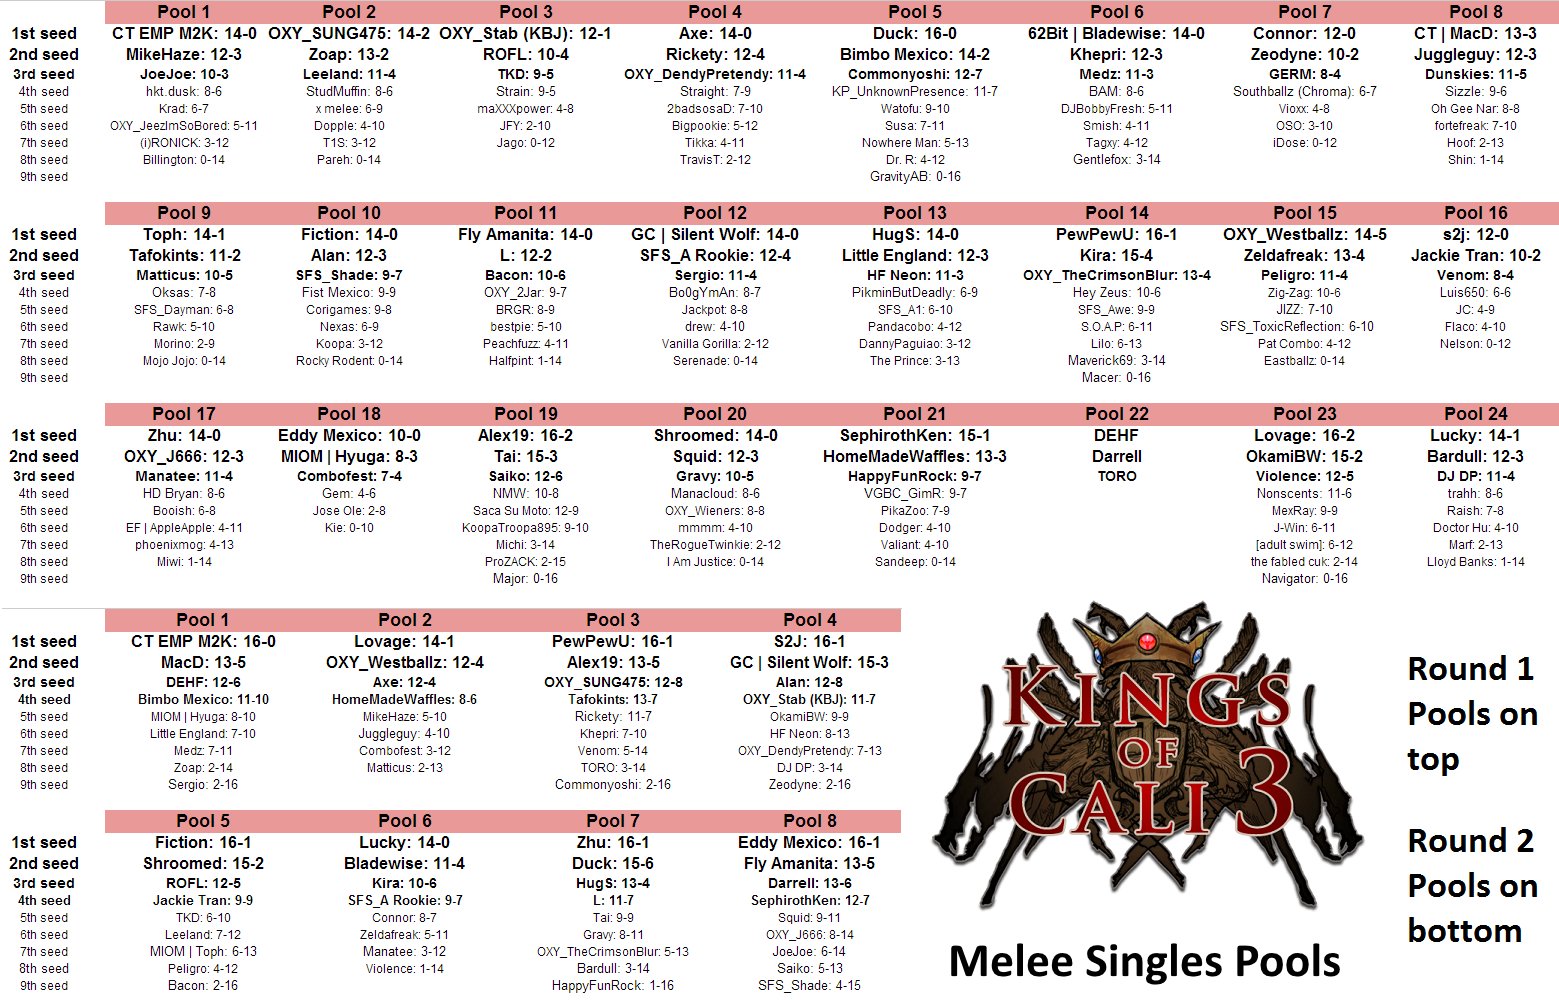 Kings of Cali 3: Melee Singles Pools